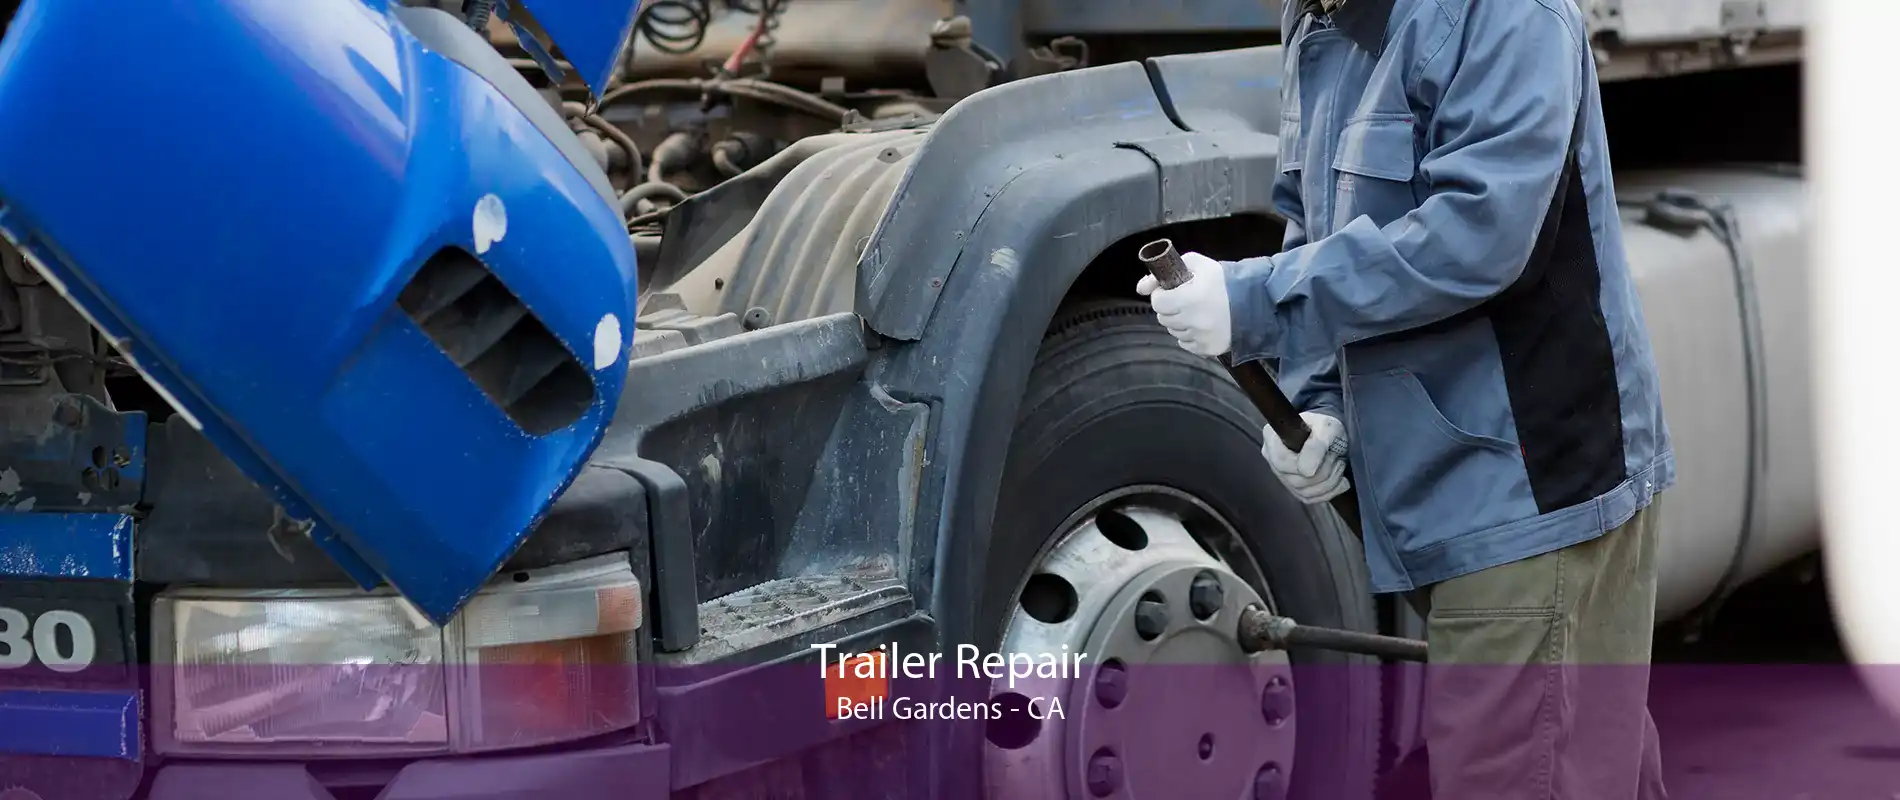 Trailer Repair Bell Gardens - CA